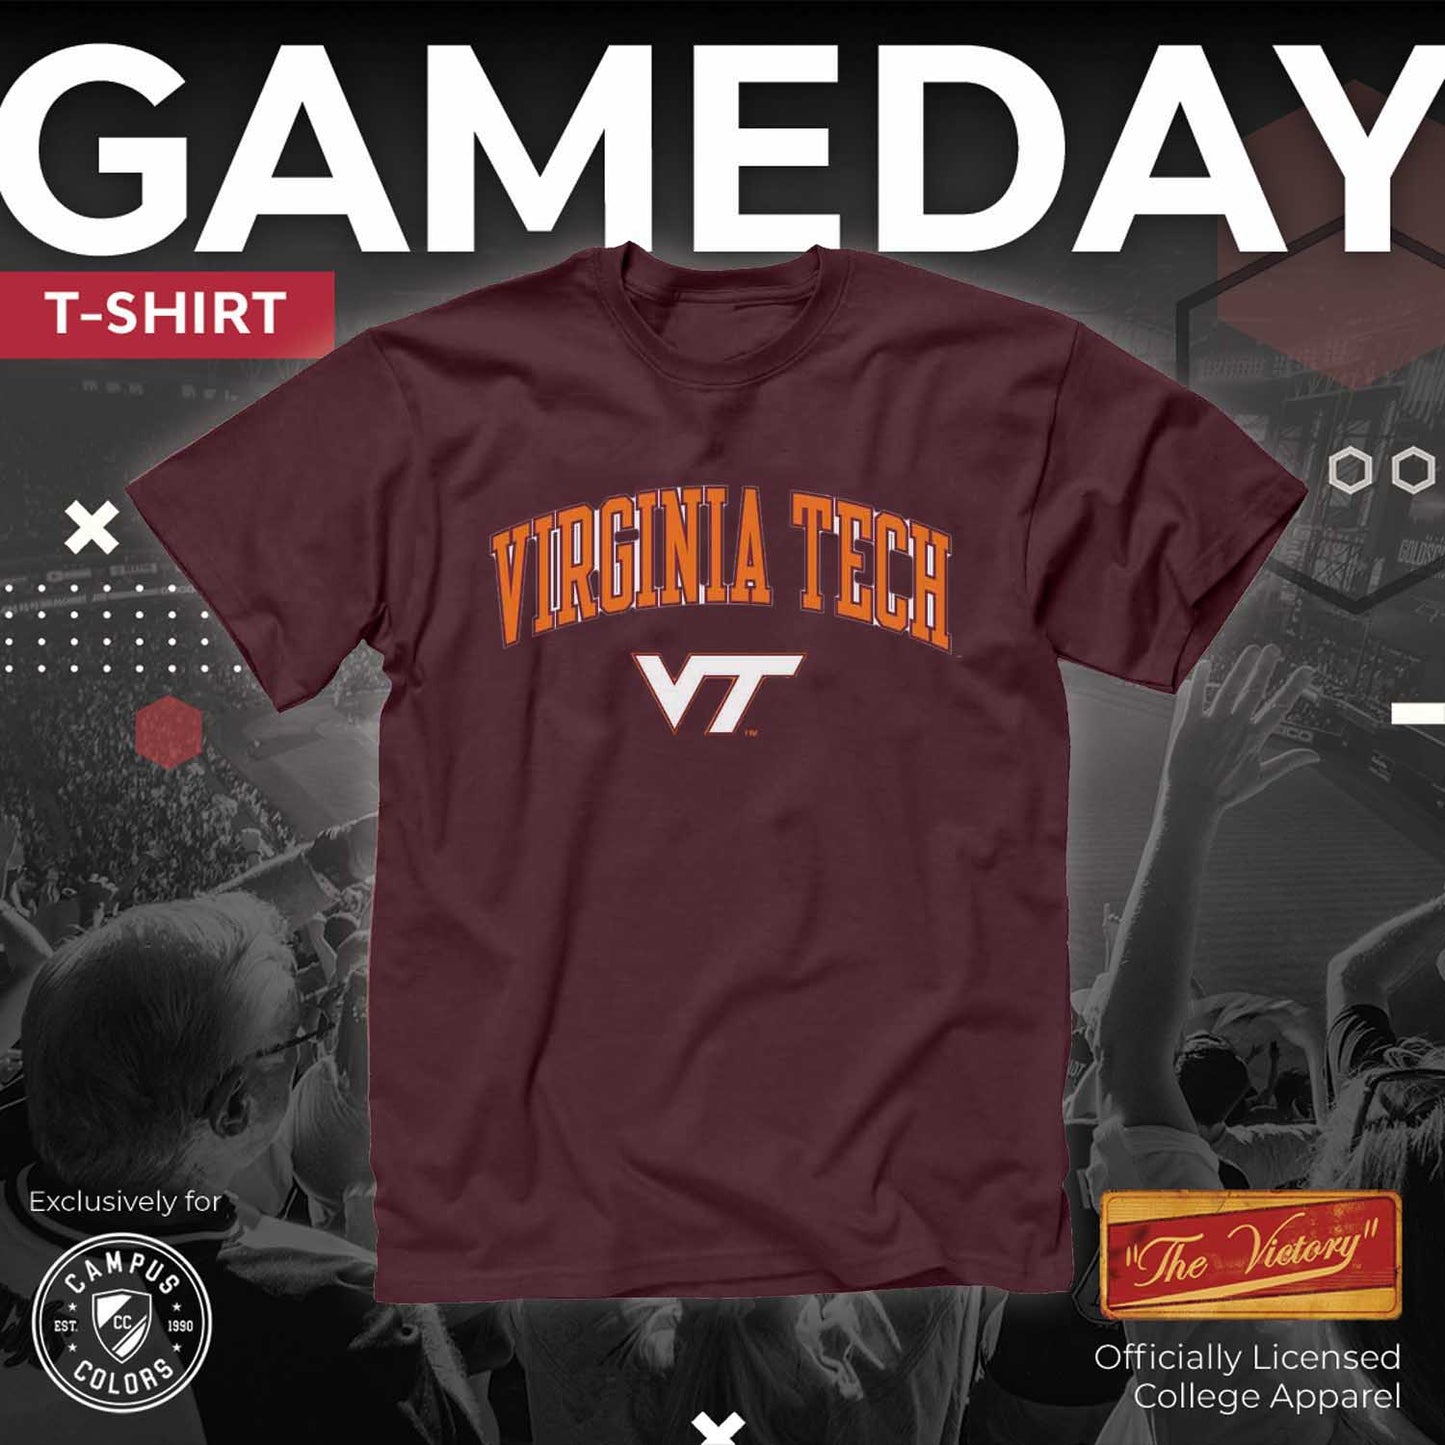 Virginia Tech Hokies NCAA Adult Gameday Cotton T-Shirt - Maroon